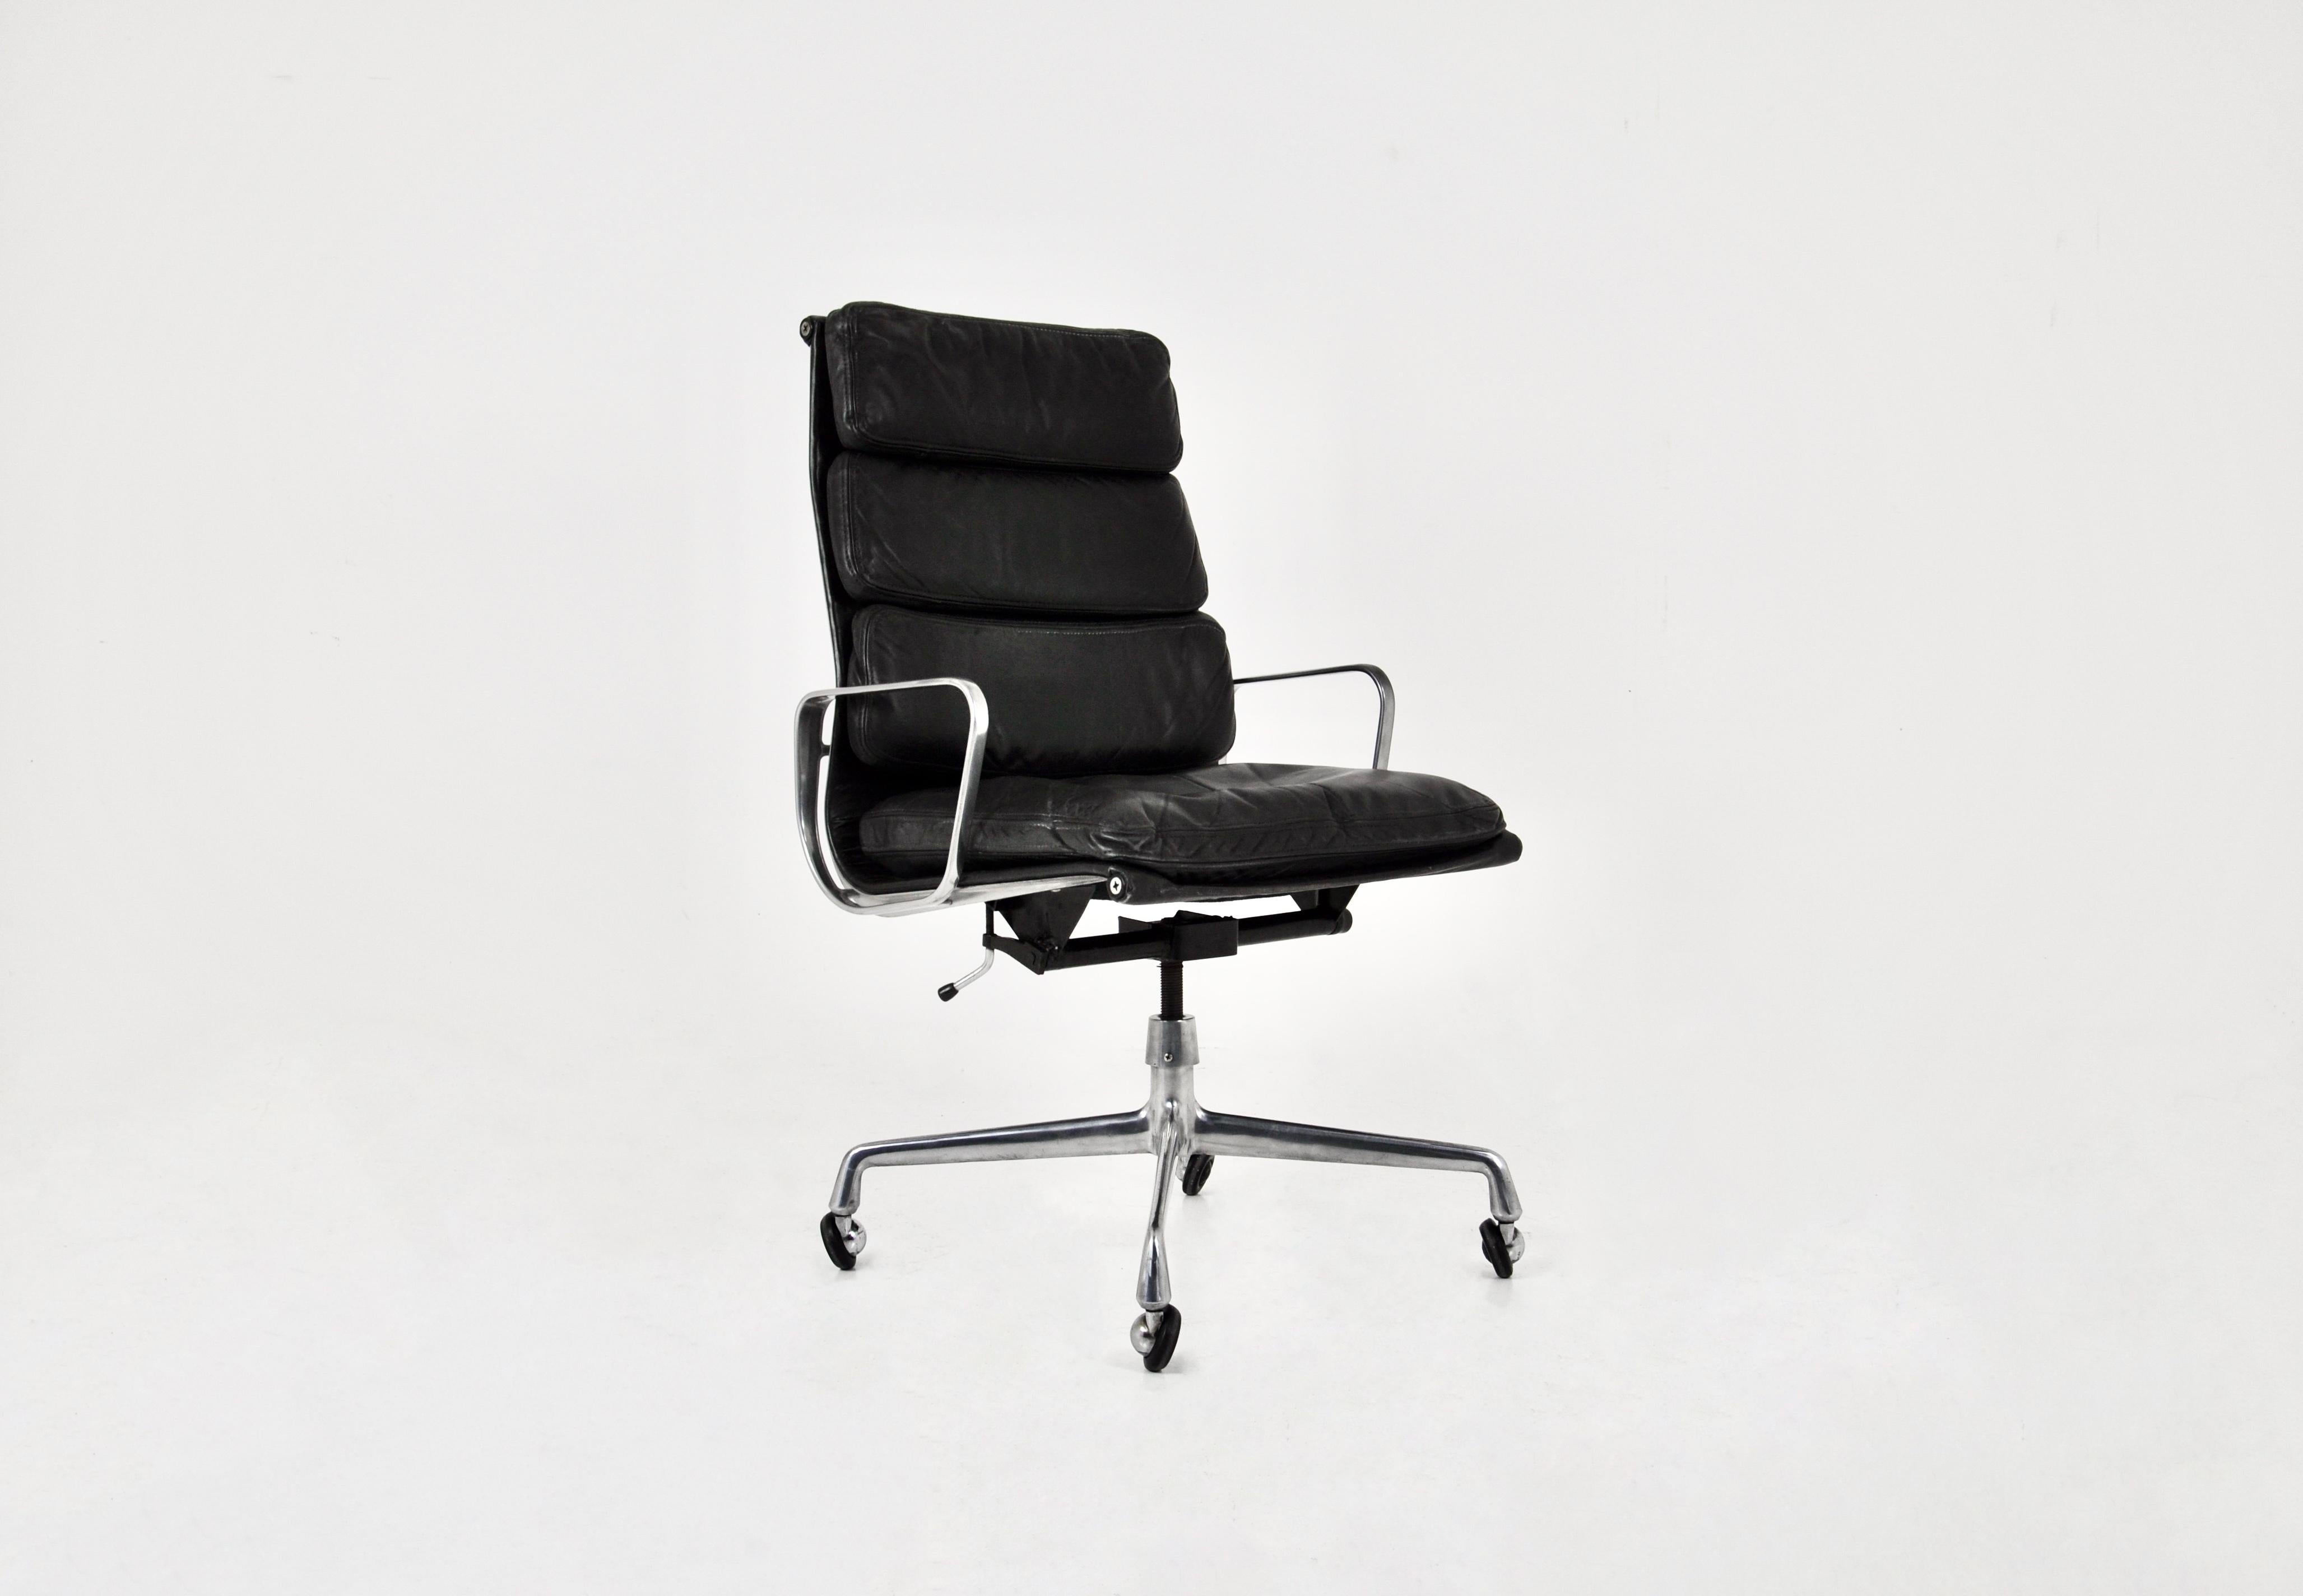 Lederstuhl mit Aluminiumfuß und Rollen. Unter dem Sitz ist Herman Miller eingestanzt. Der Stuhl dreht sich um sich selbst und lehnt sich zurück. Sitzhöhe: 53 cm. Zeit- und altersbedingte Abnutzung. 